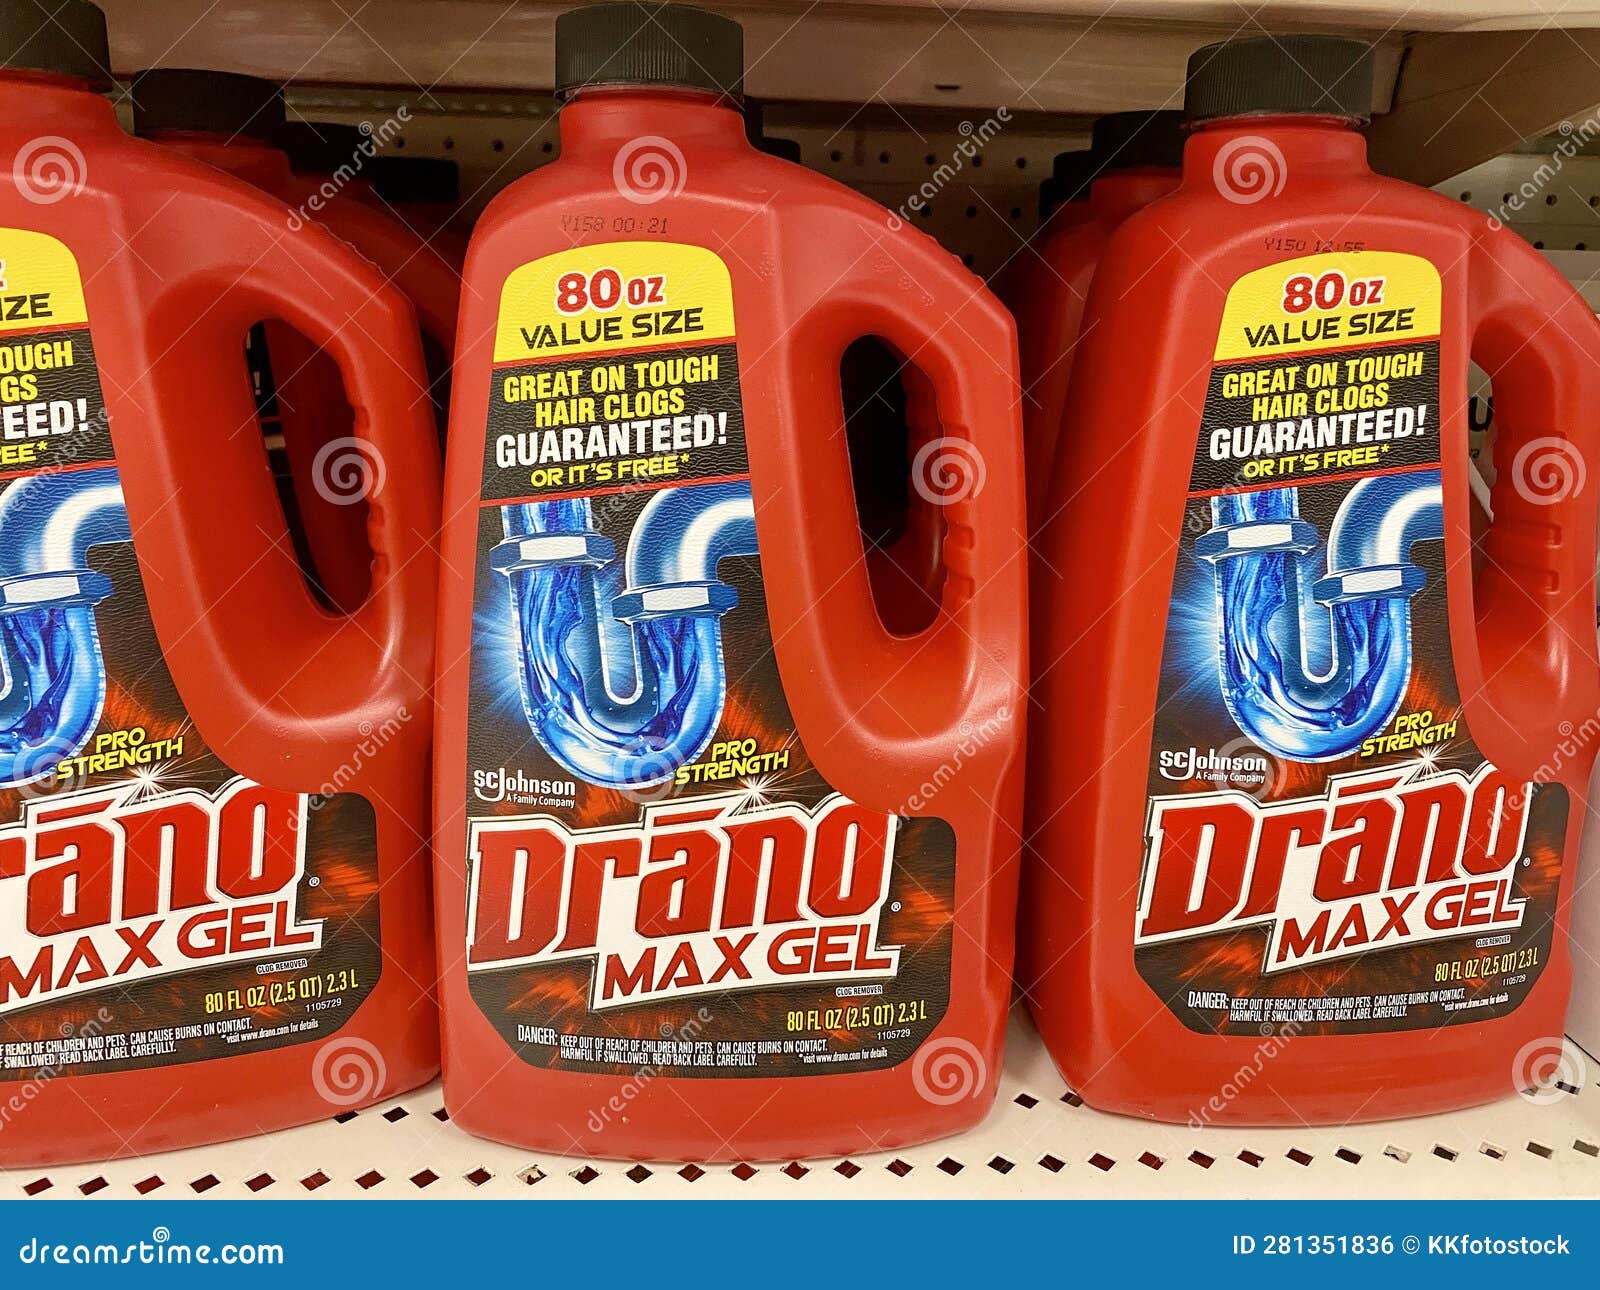 https://thumbs.dreamstime.com/z/bottles-drano-max-gel-drain-cleaner-bottle-store-shelf-281351836.jpg